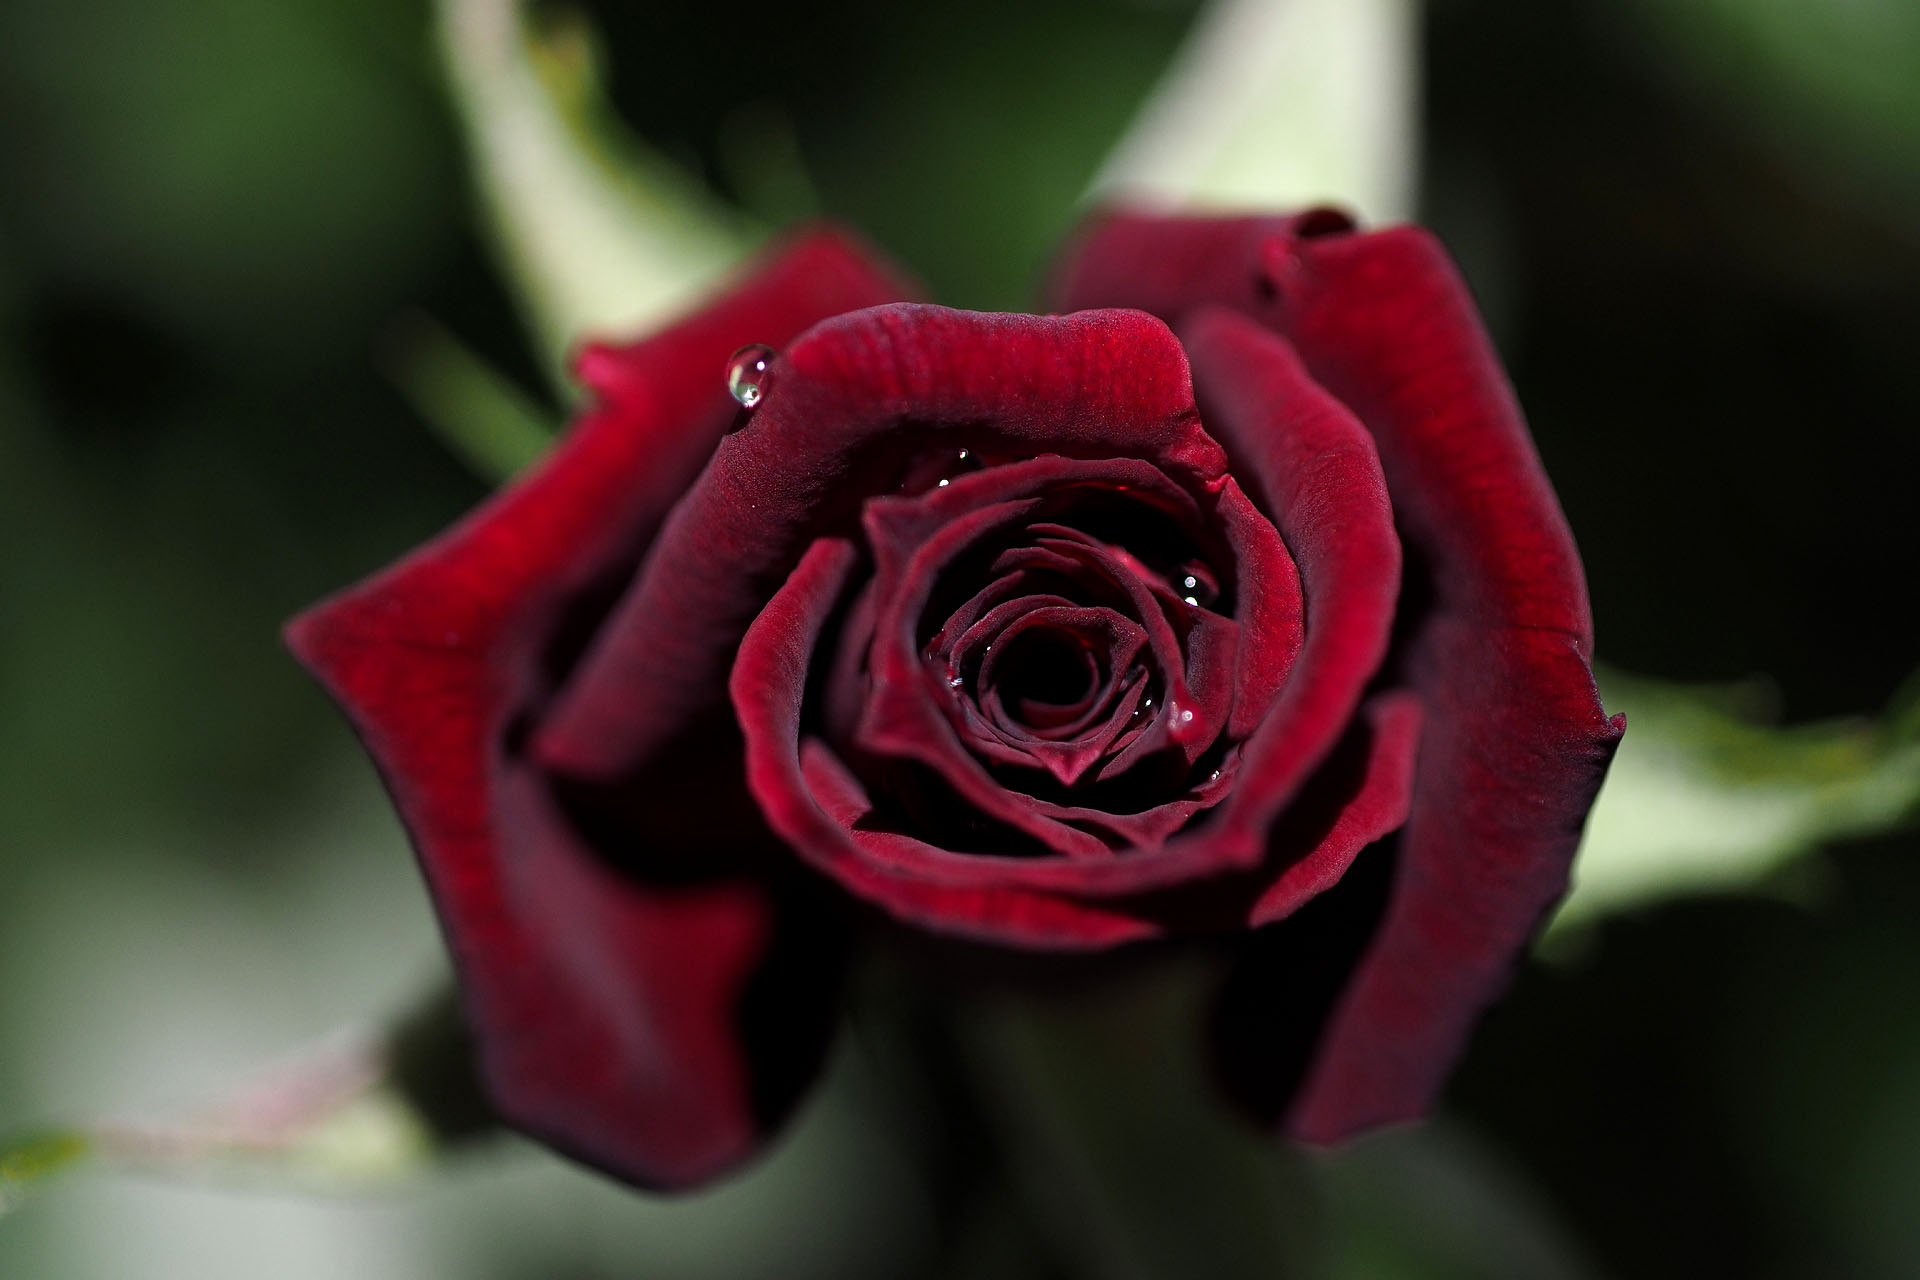 Kin I No Twitter 庭のバラ 黒バラ ビロード光沢をもつ濃い紅い花はひかりの加減 花弁の重なりの多いところでかなり黒く見えます 白い花ではもとになった品種の色を蕾や咲き始めに見ることがあります T Co Khxuuhfsct Twitter